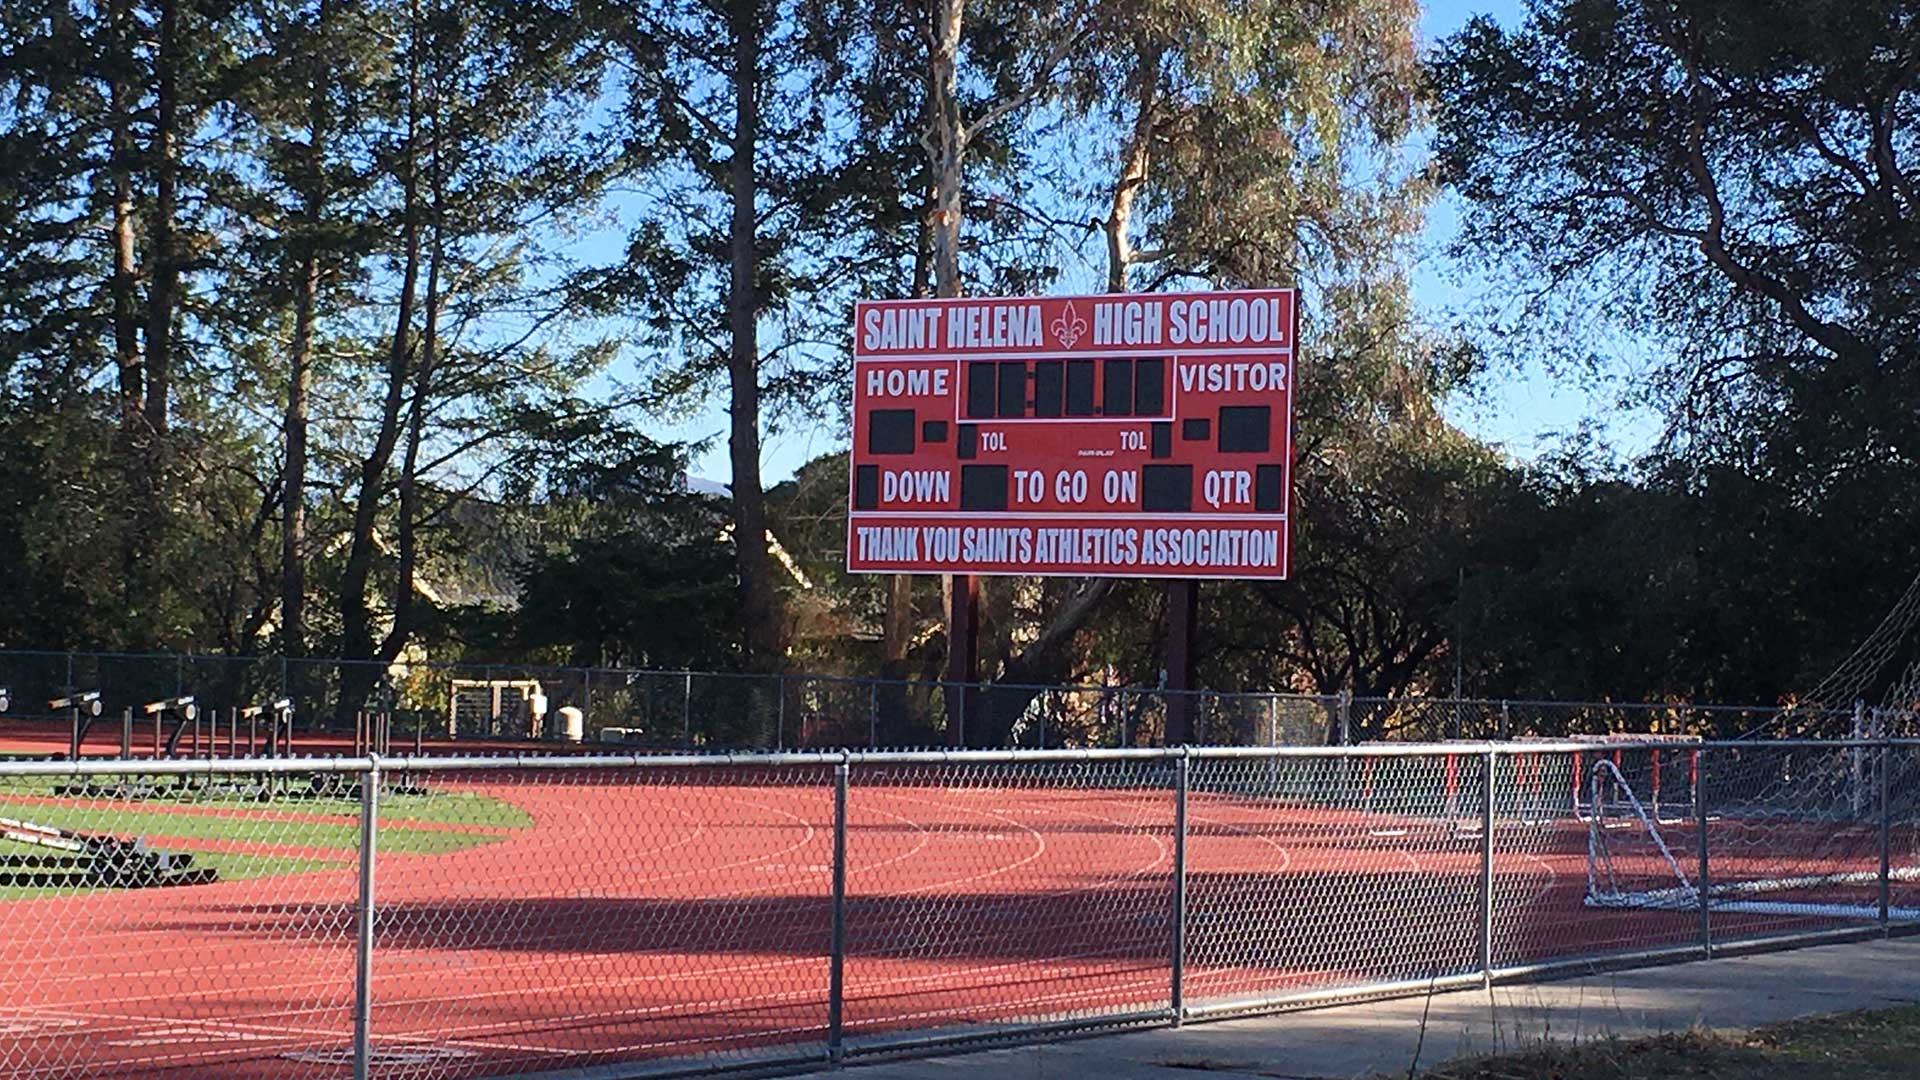 New football scoreboard outside high school playing field.